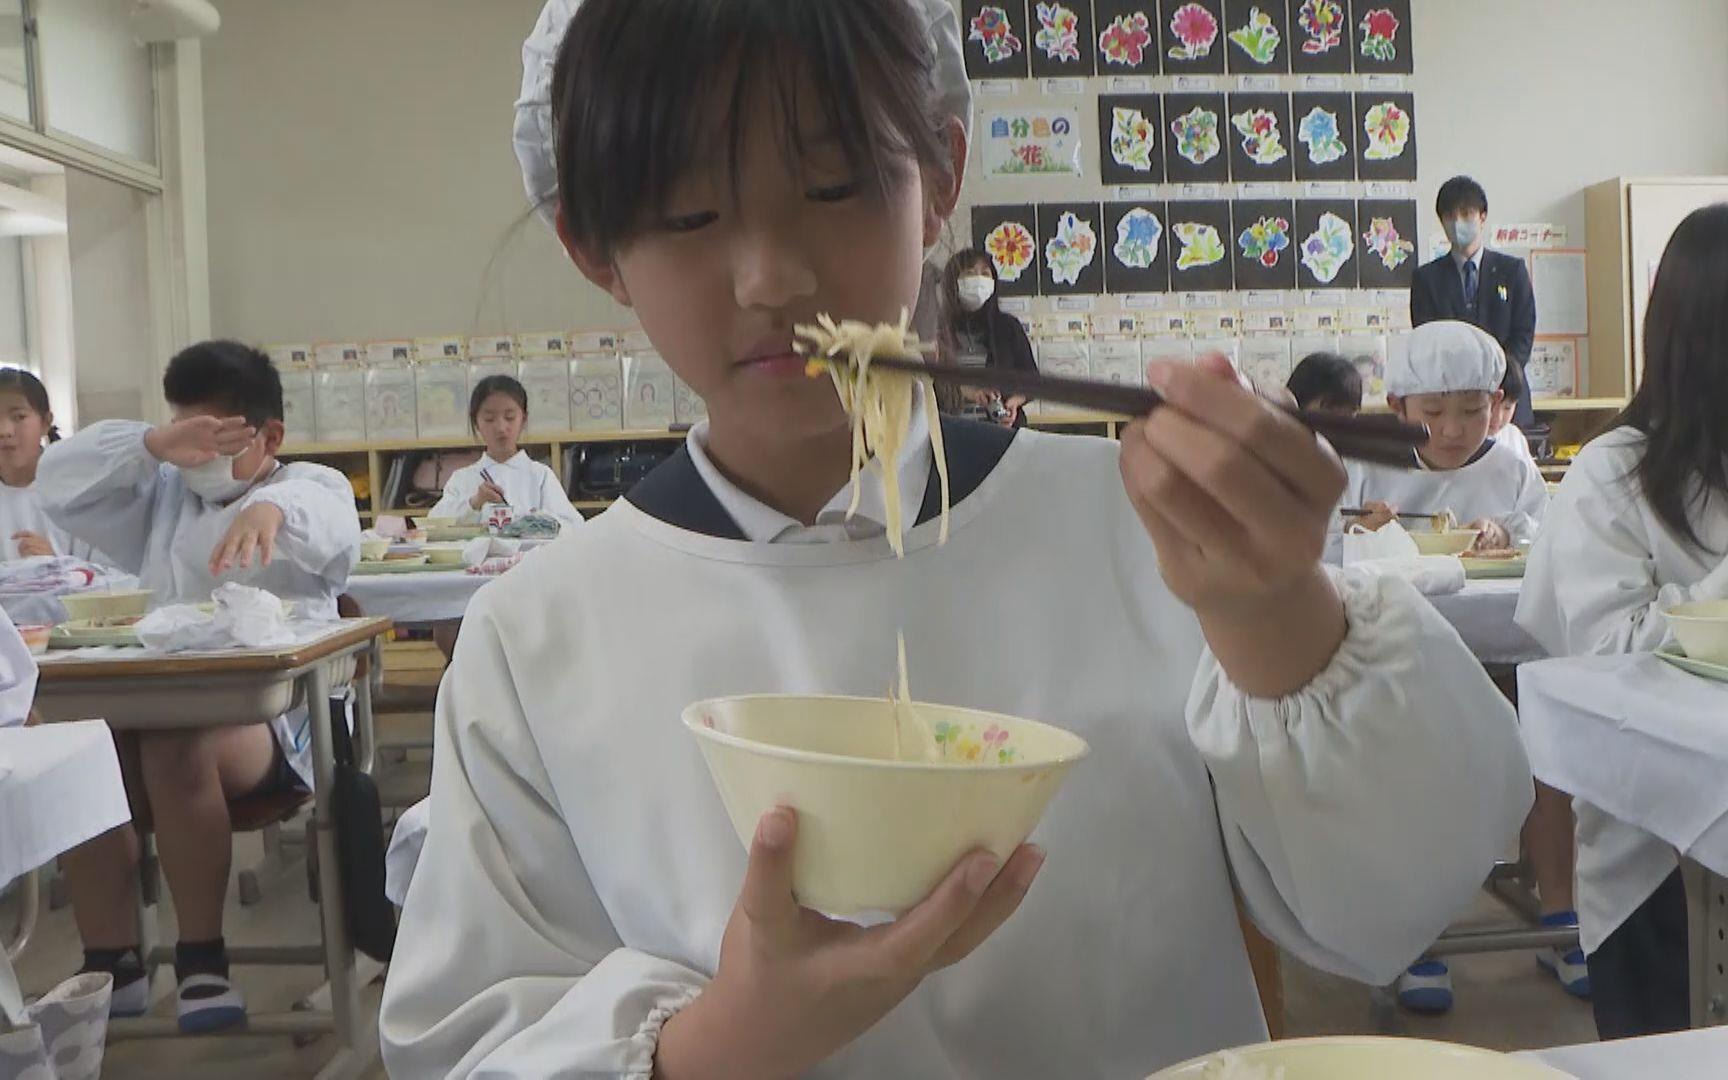 Bún bò Huế được đưa vào bữa trưa của các trường tiểu học Nhật Bản, dân mạng đặt câu hỏi “hình như thiếu một thứ quan trọng”